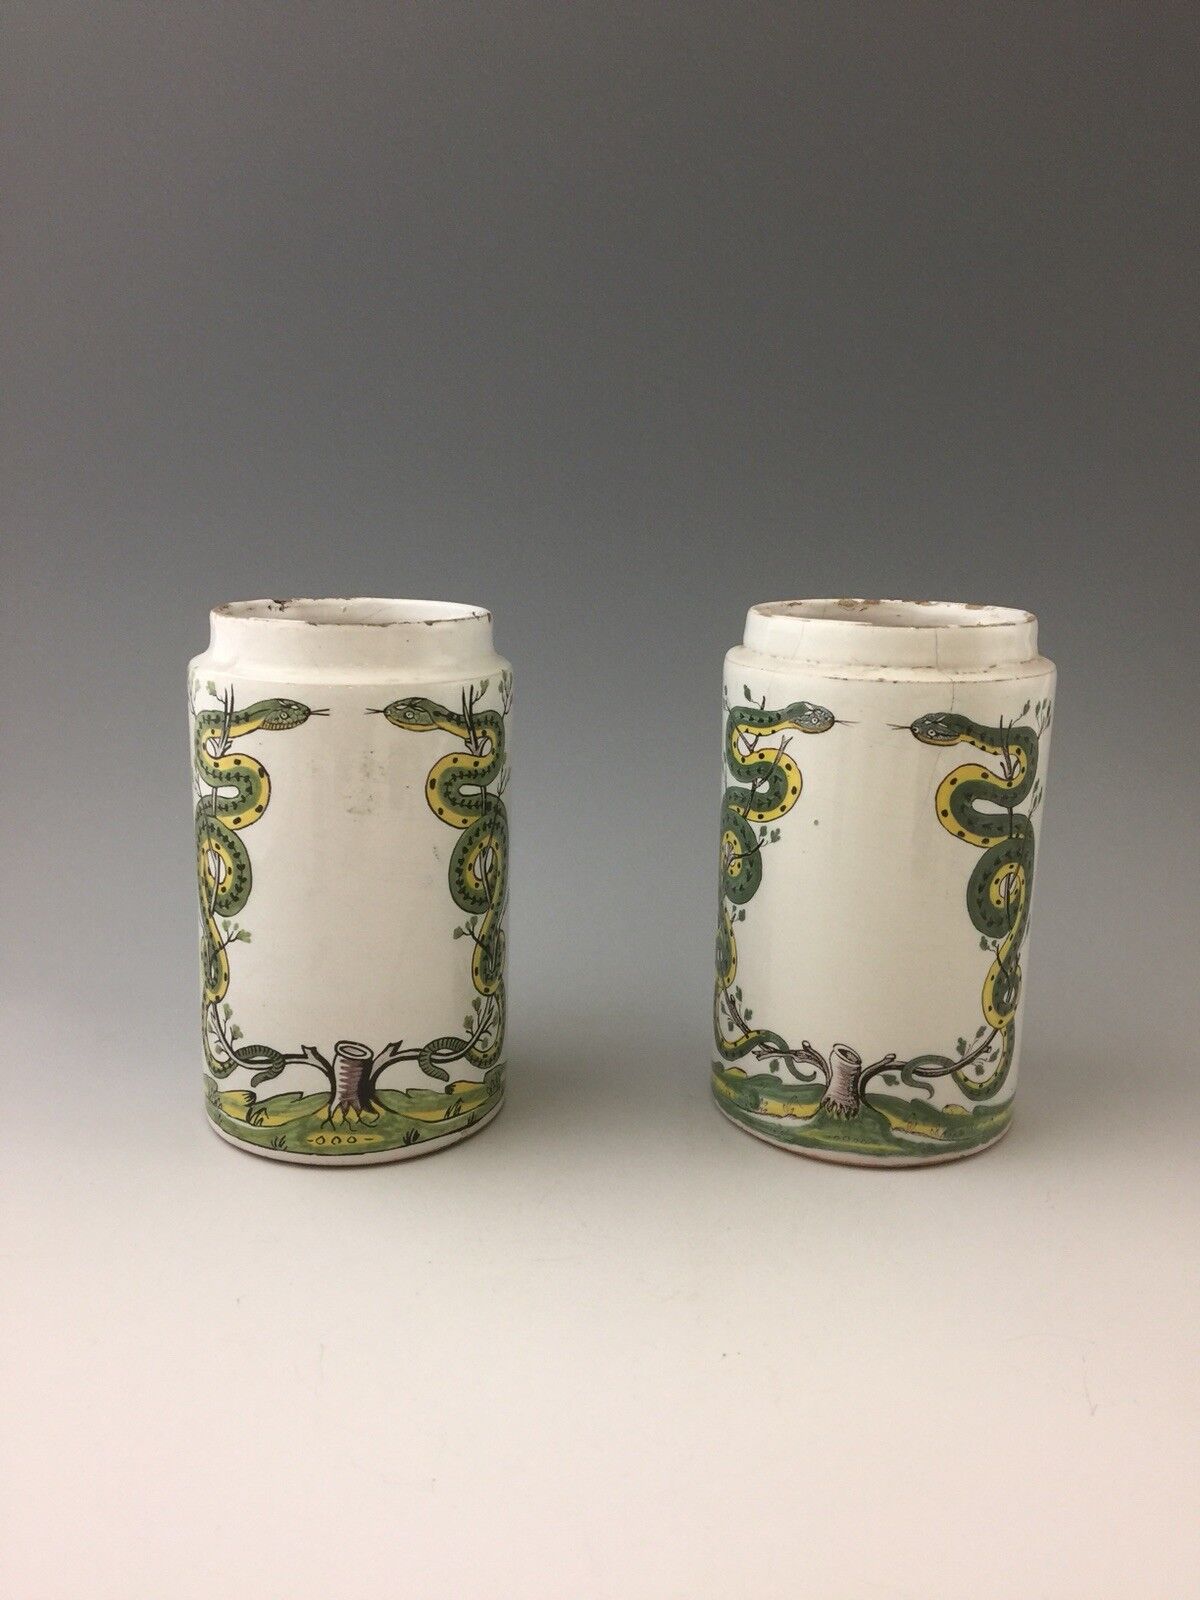 A Pair of Antique Rouen Drug Jars/Albarellos